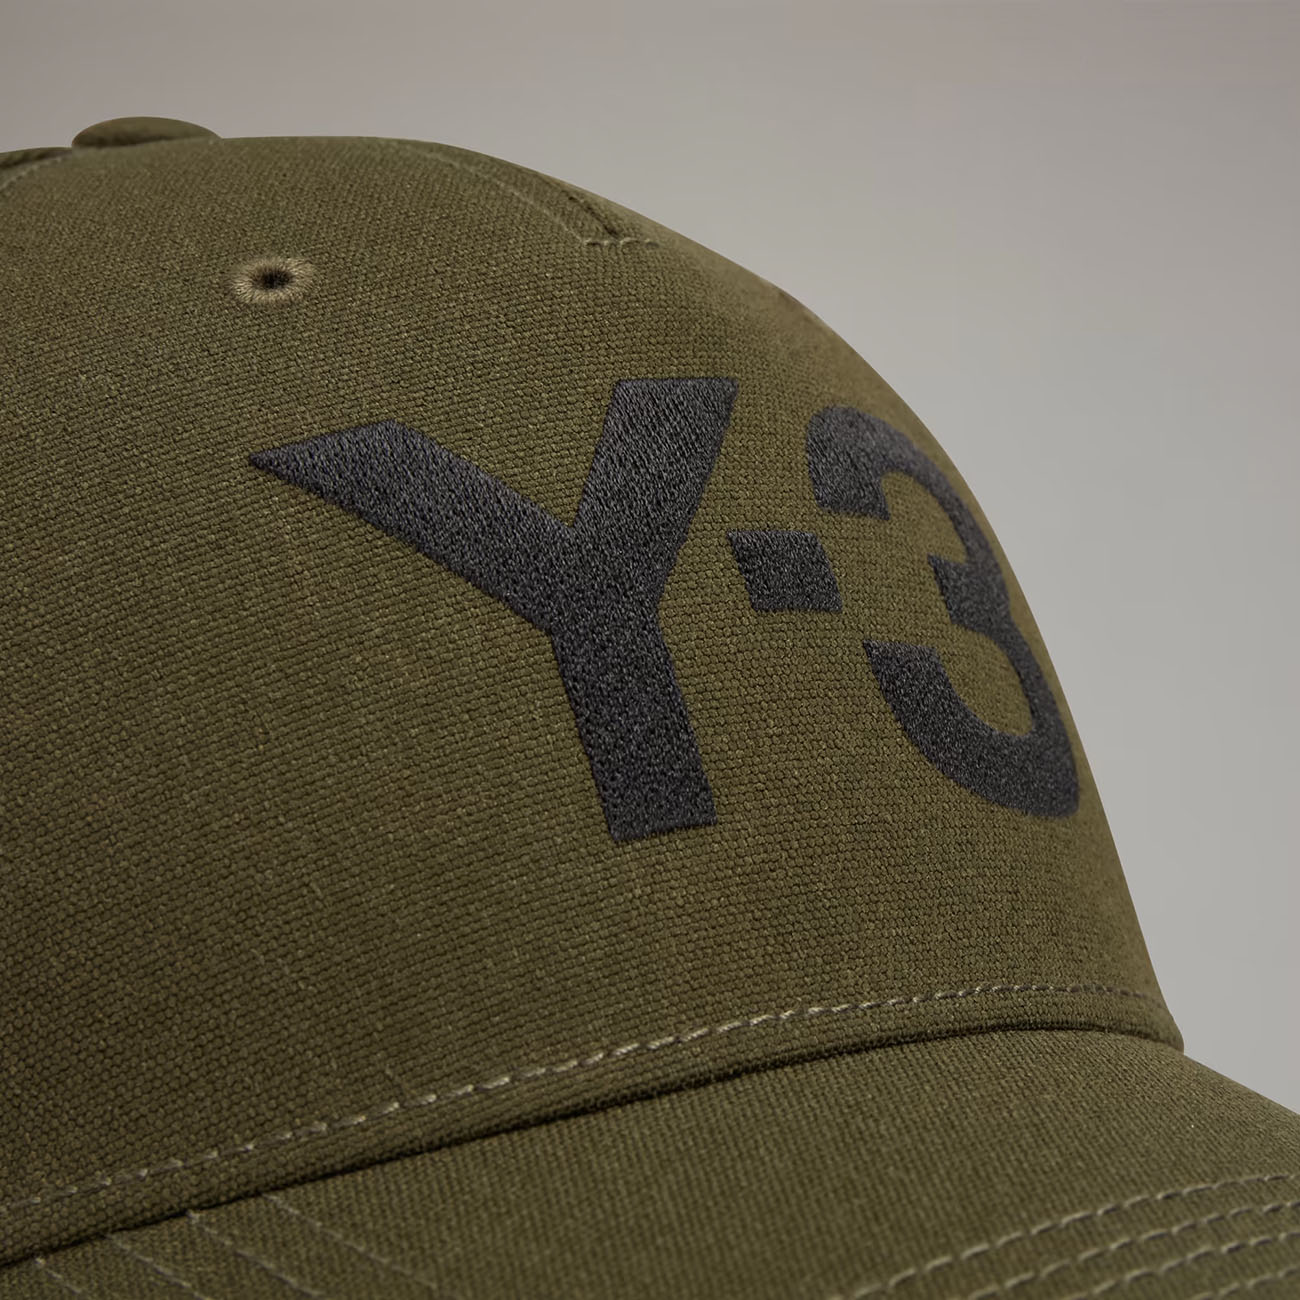 Y-3 LOGO CAP